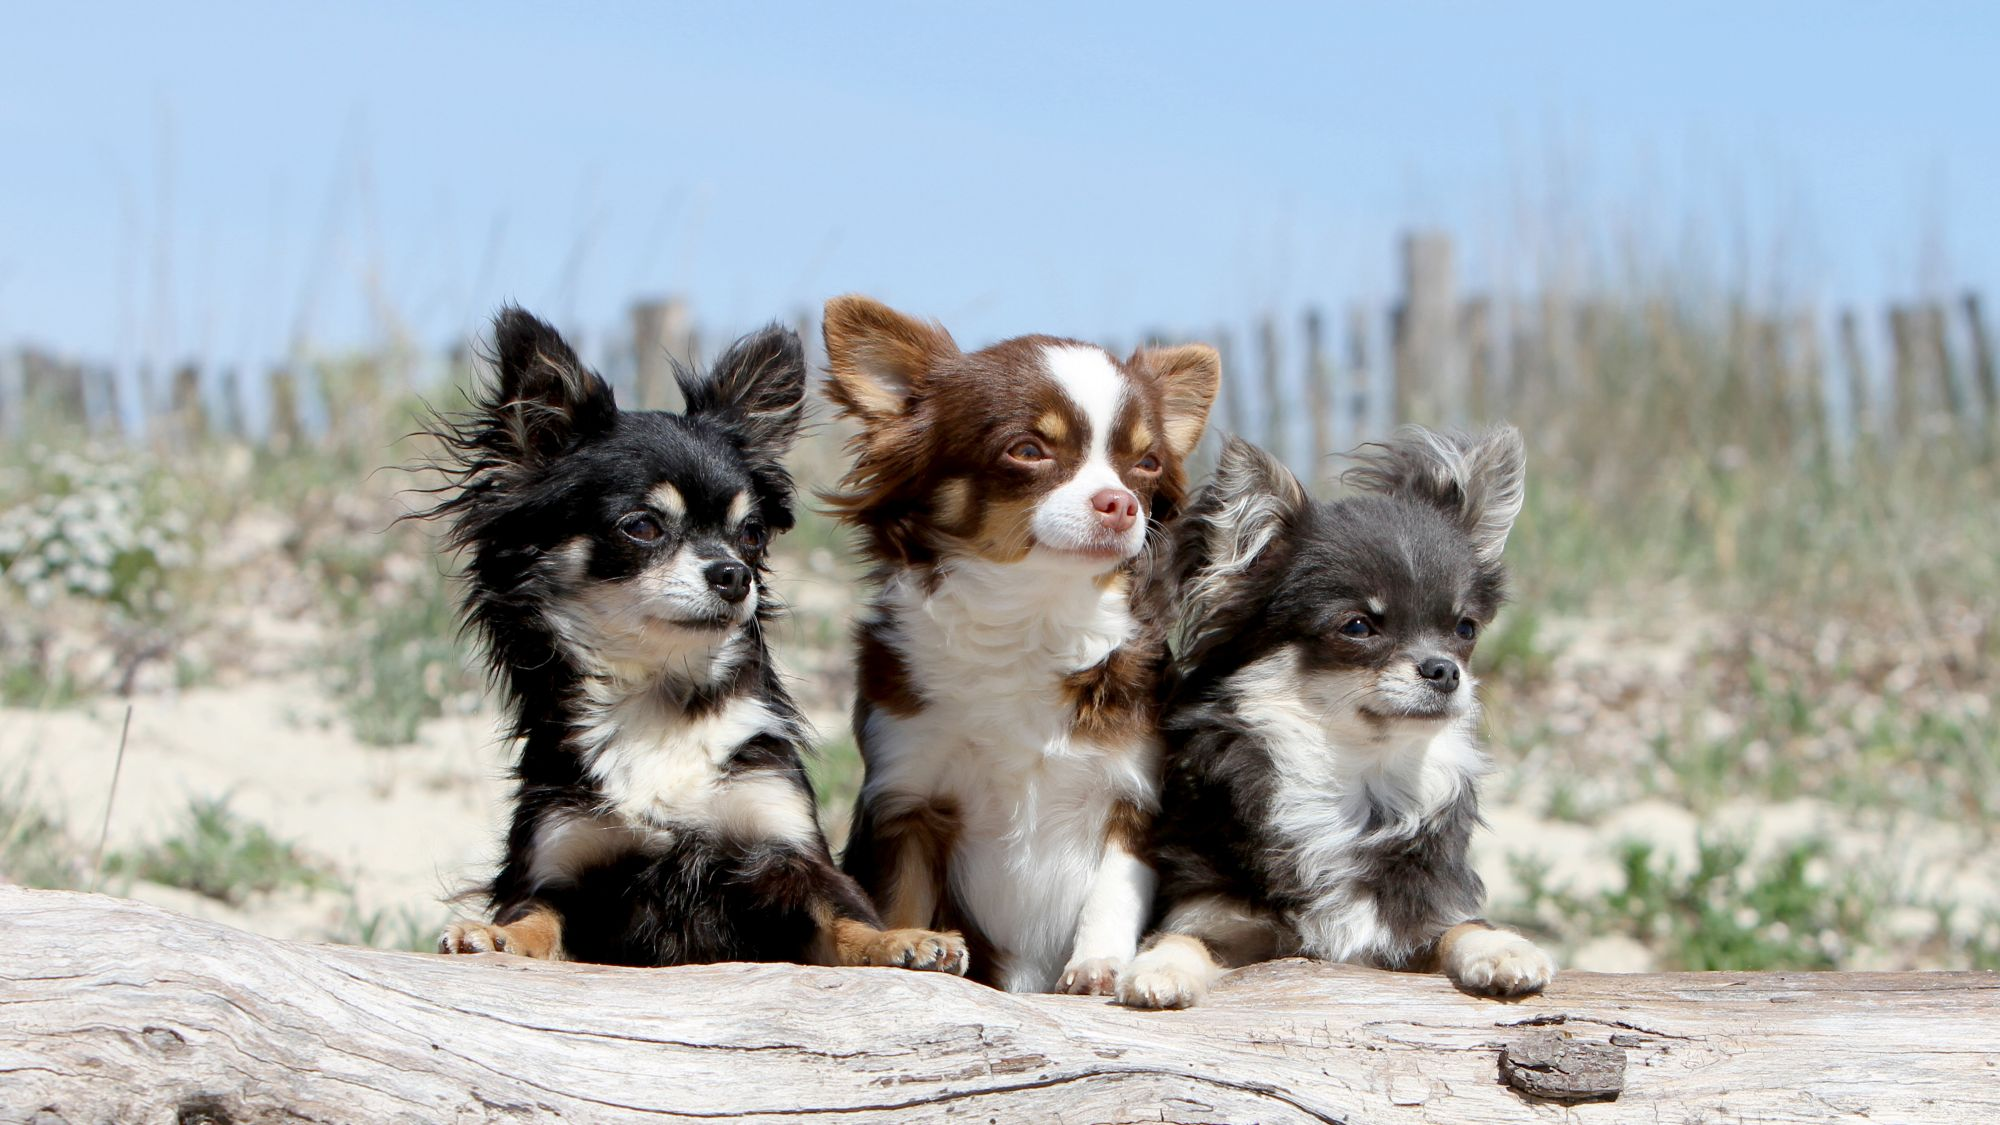 Three Long Coat Chihuahuas lying on log